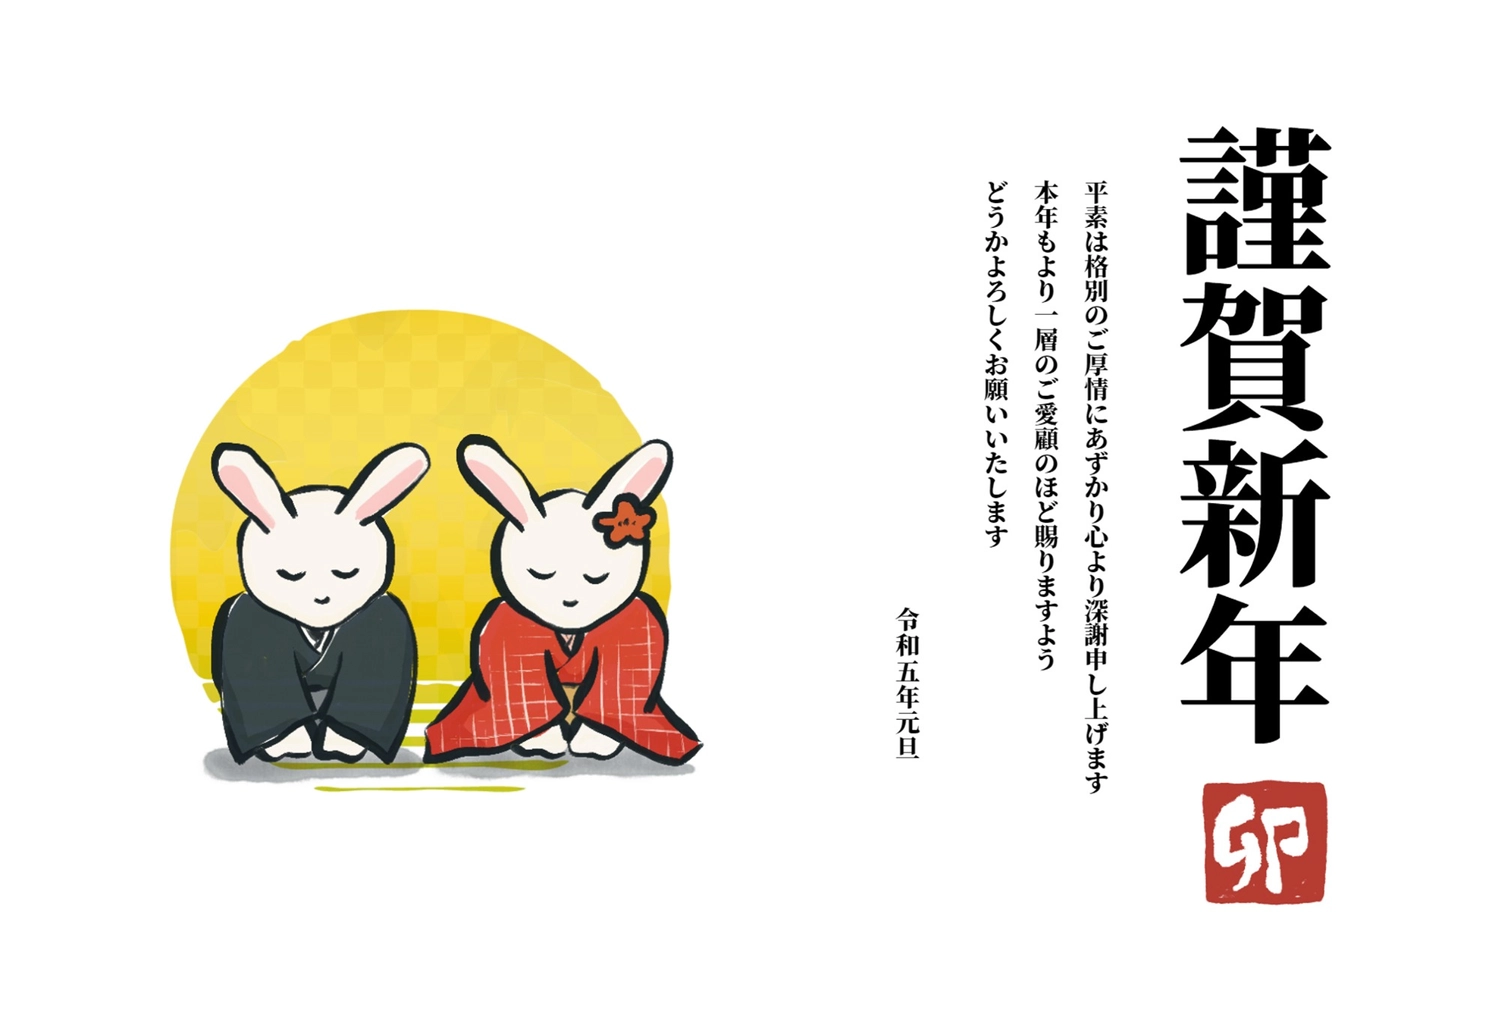 年賀状　あいさつする和服のうさぎの夫婦, Kimono, bowing while sitting, Sunset, New Year Card template